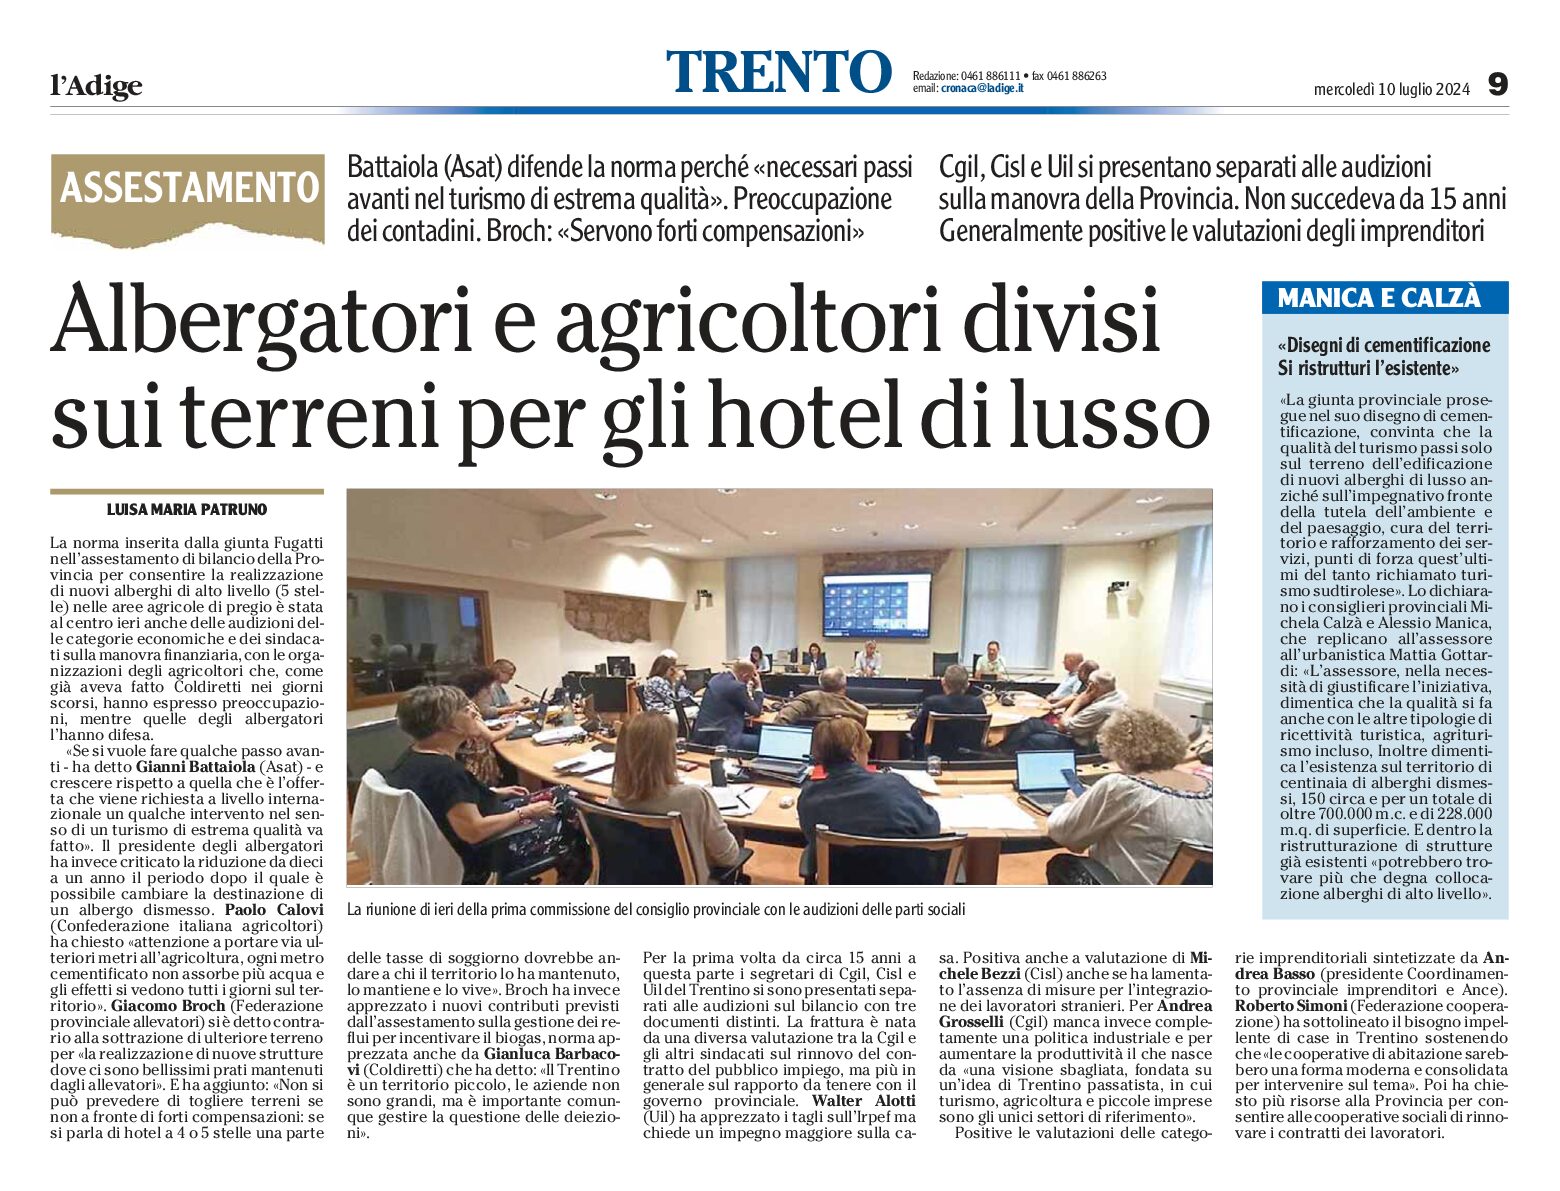 Trento: albergatori e agricoltori divisi sui terreni per gli hotel di lusso